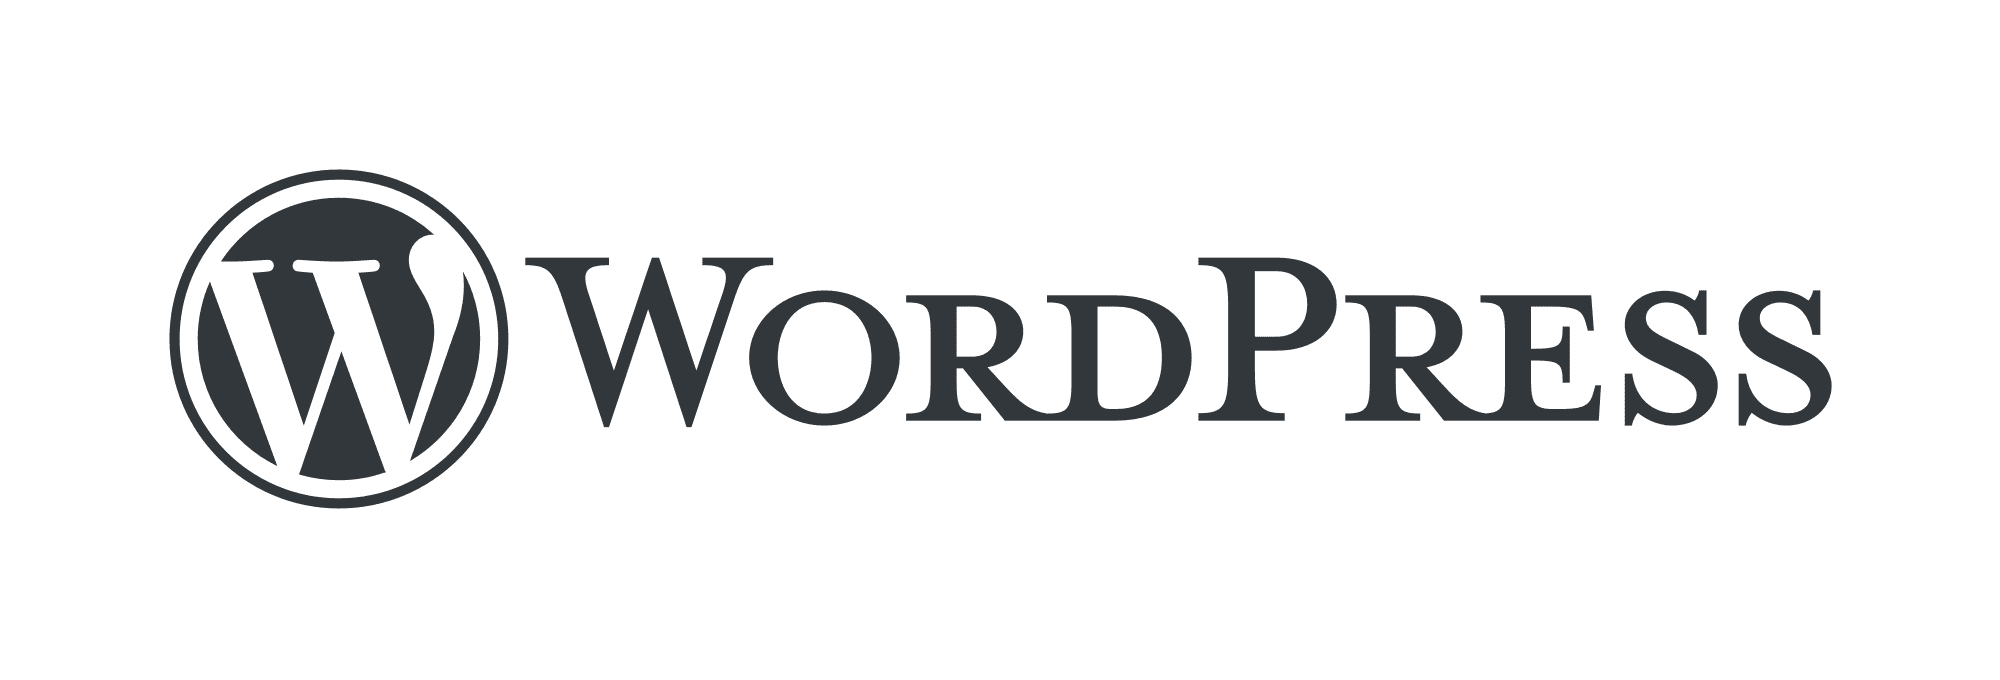 WordPress ist ein weit verbreitetes Open-Source-Content-Management-System (CMS), das zur Erstellung und Verwaltung von Websites verwendet wird. Es zeichnet sich durch seine Benutzerfreundlichkeit und eine große Auswahl an Funktionen aus.